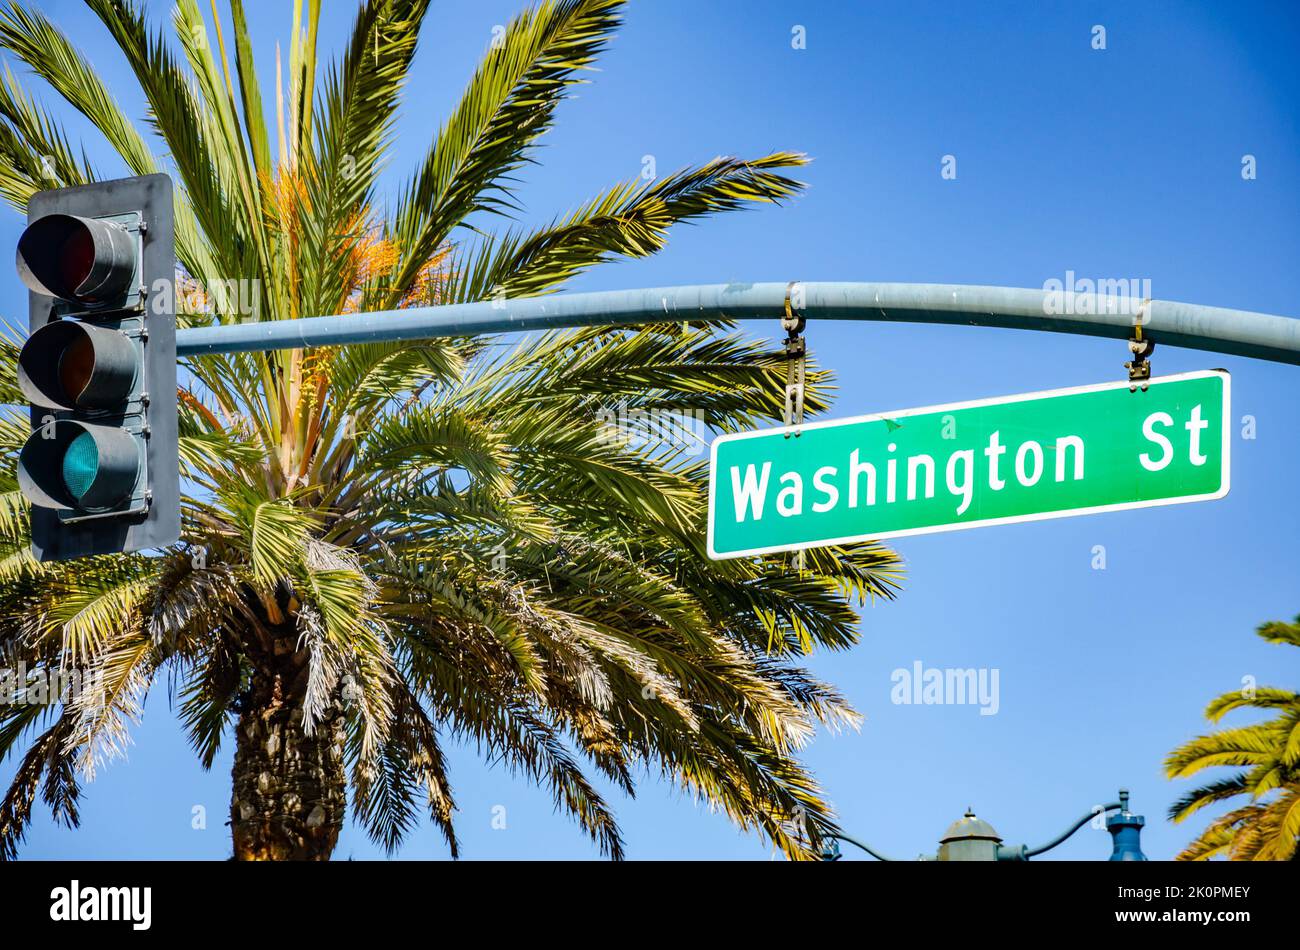 Ein Straßenschild für die Washington Street, das an der Kreuzung einer Ampel in San Francisco mit Palmen und blauem Himmel im Hintergrund hängt Stockfoto